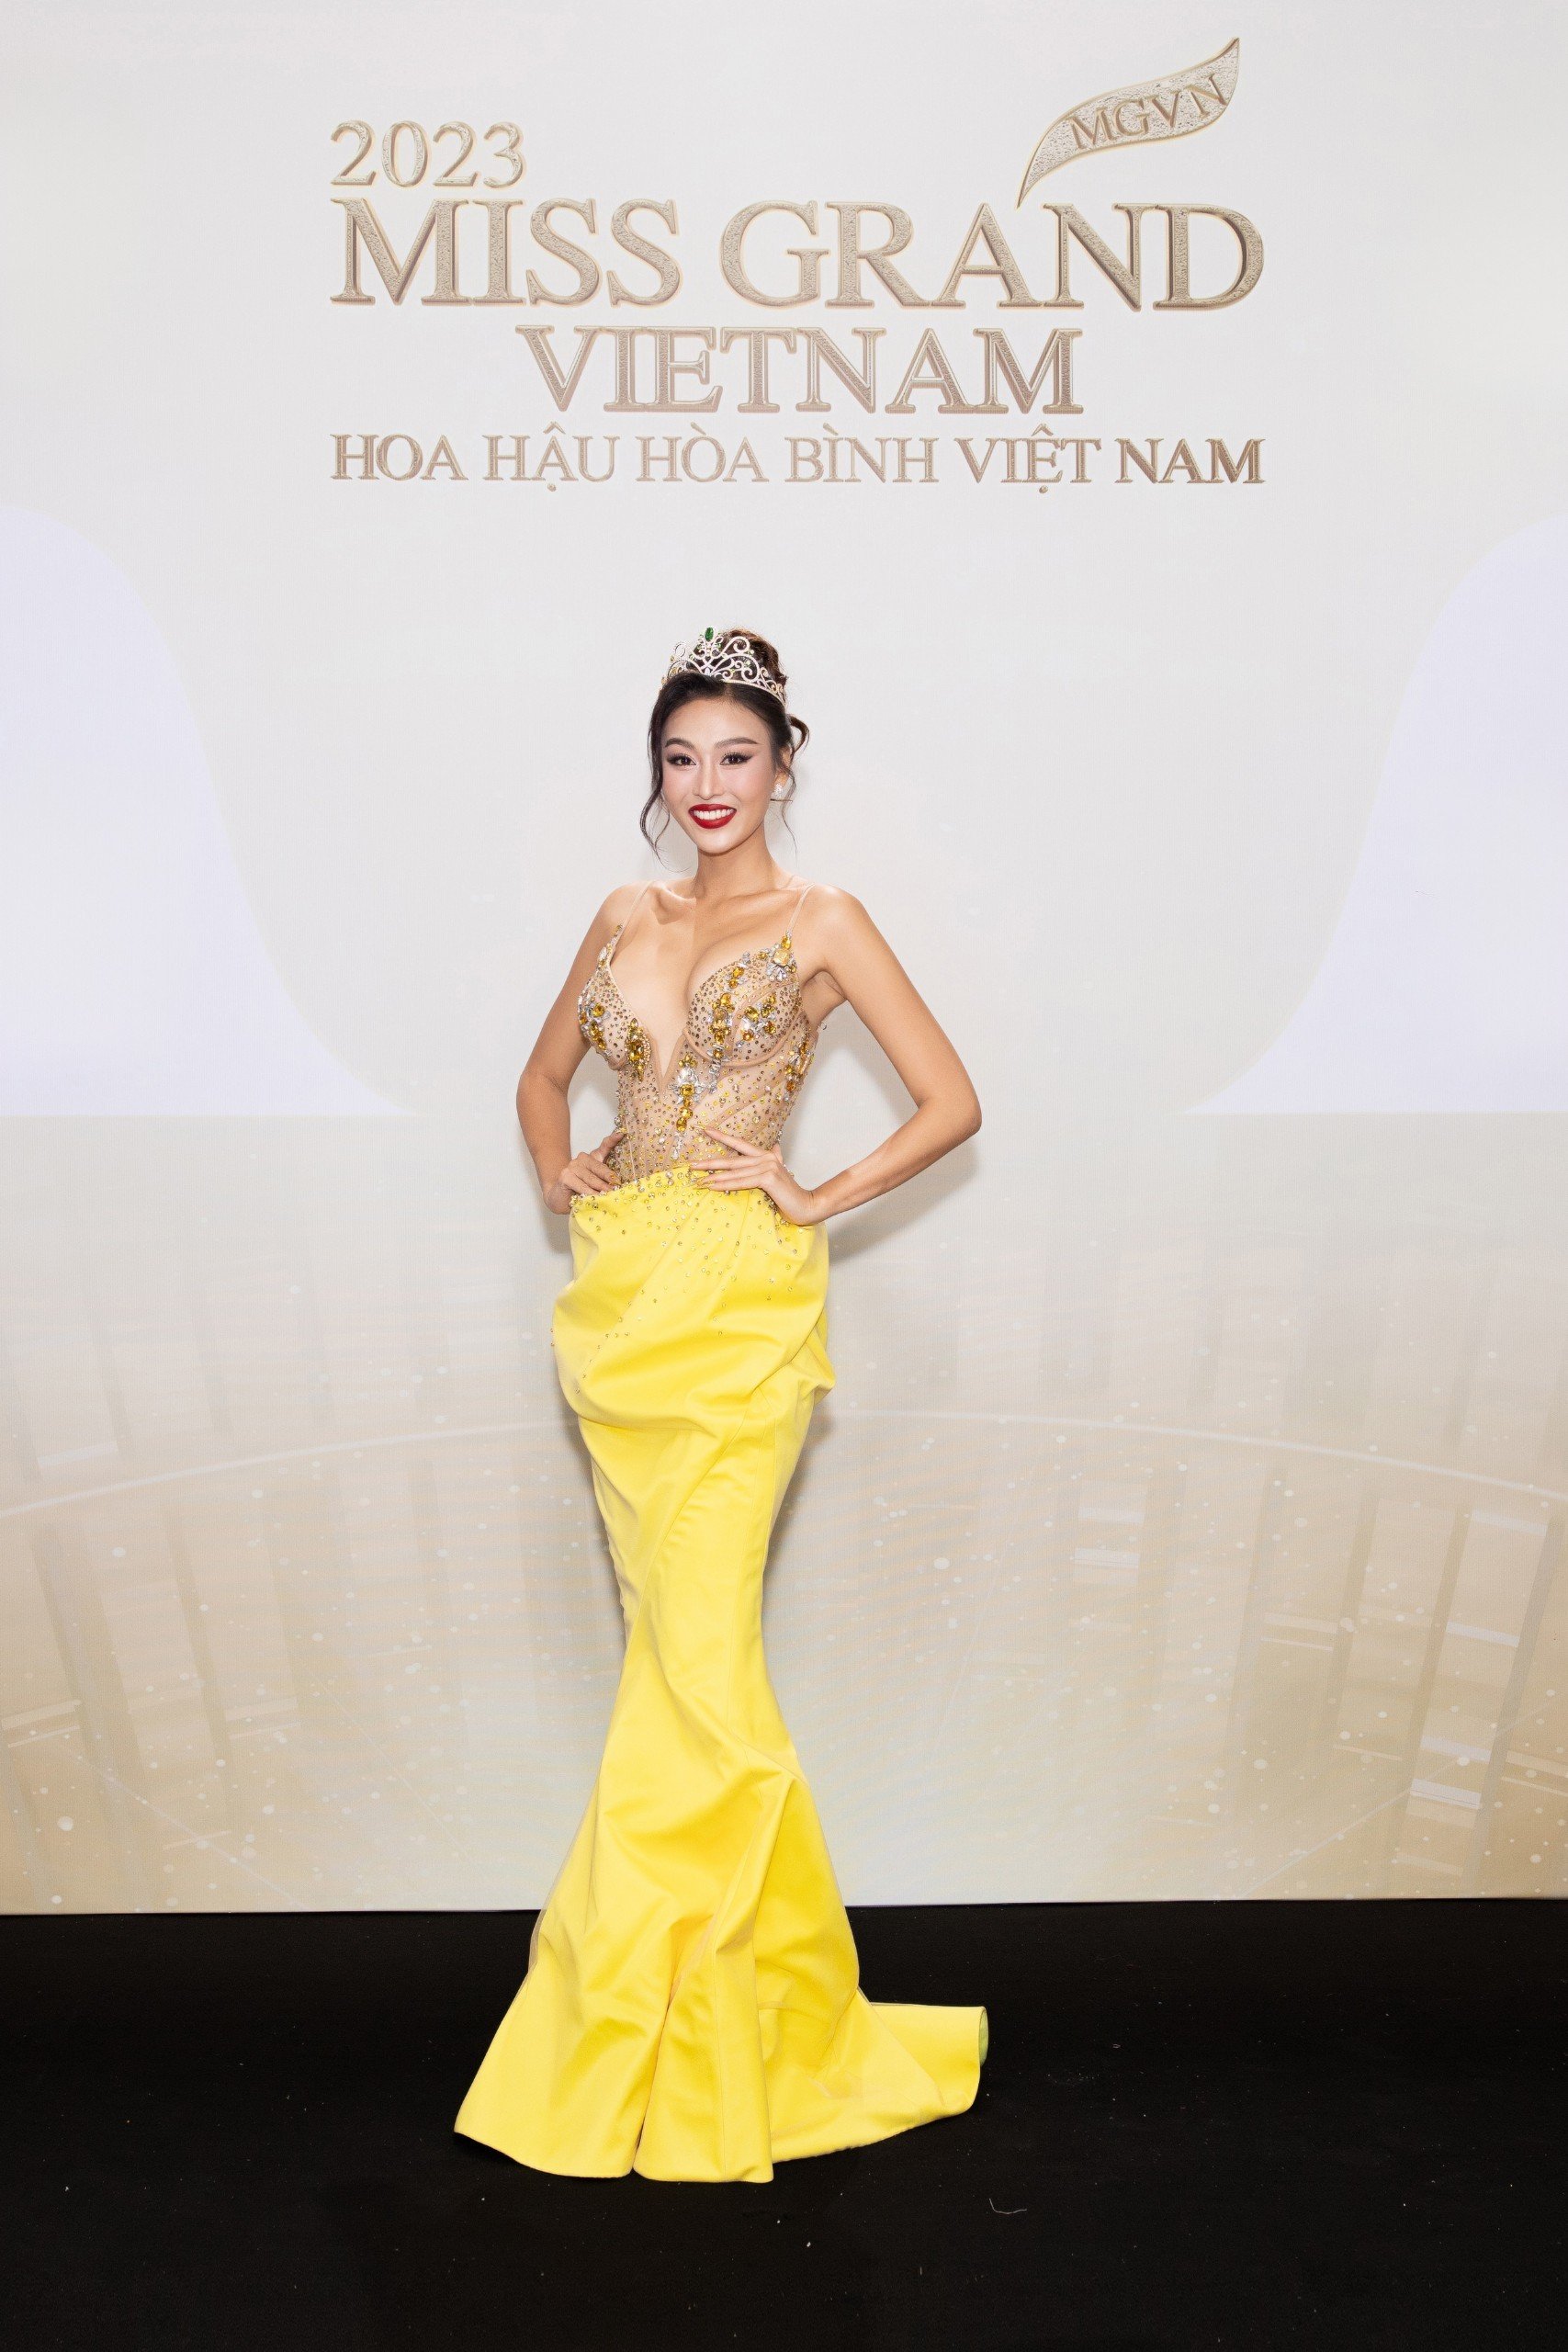 Thảm đỏ chung khảo toàn quốc Miss Grand Vietnam 2023: Huỳnh Minh Kiên khoe đường cong, Thuỳ Tiên kín đáo vẫn đẹp - ảnh 11